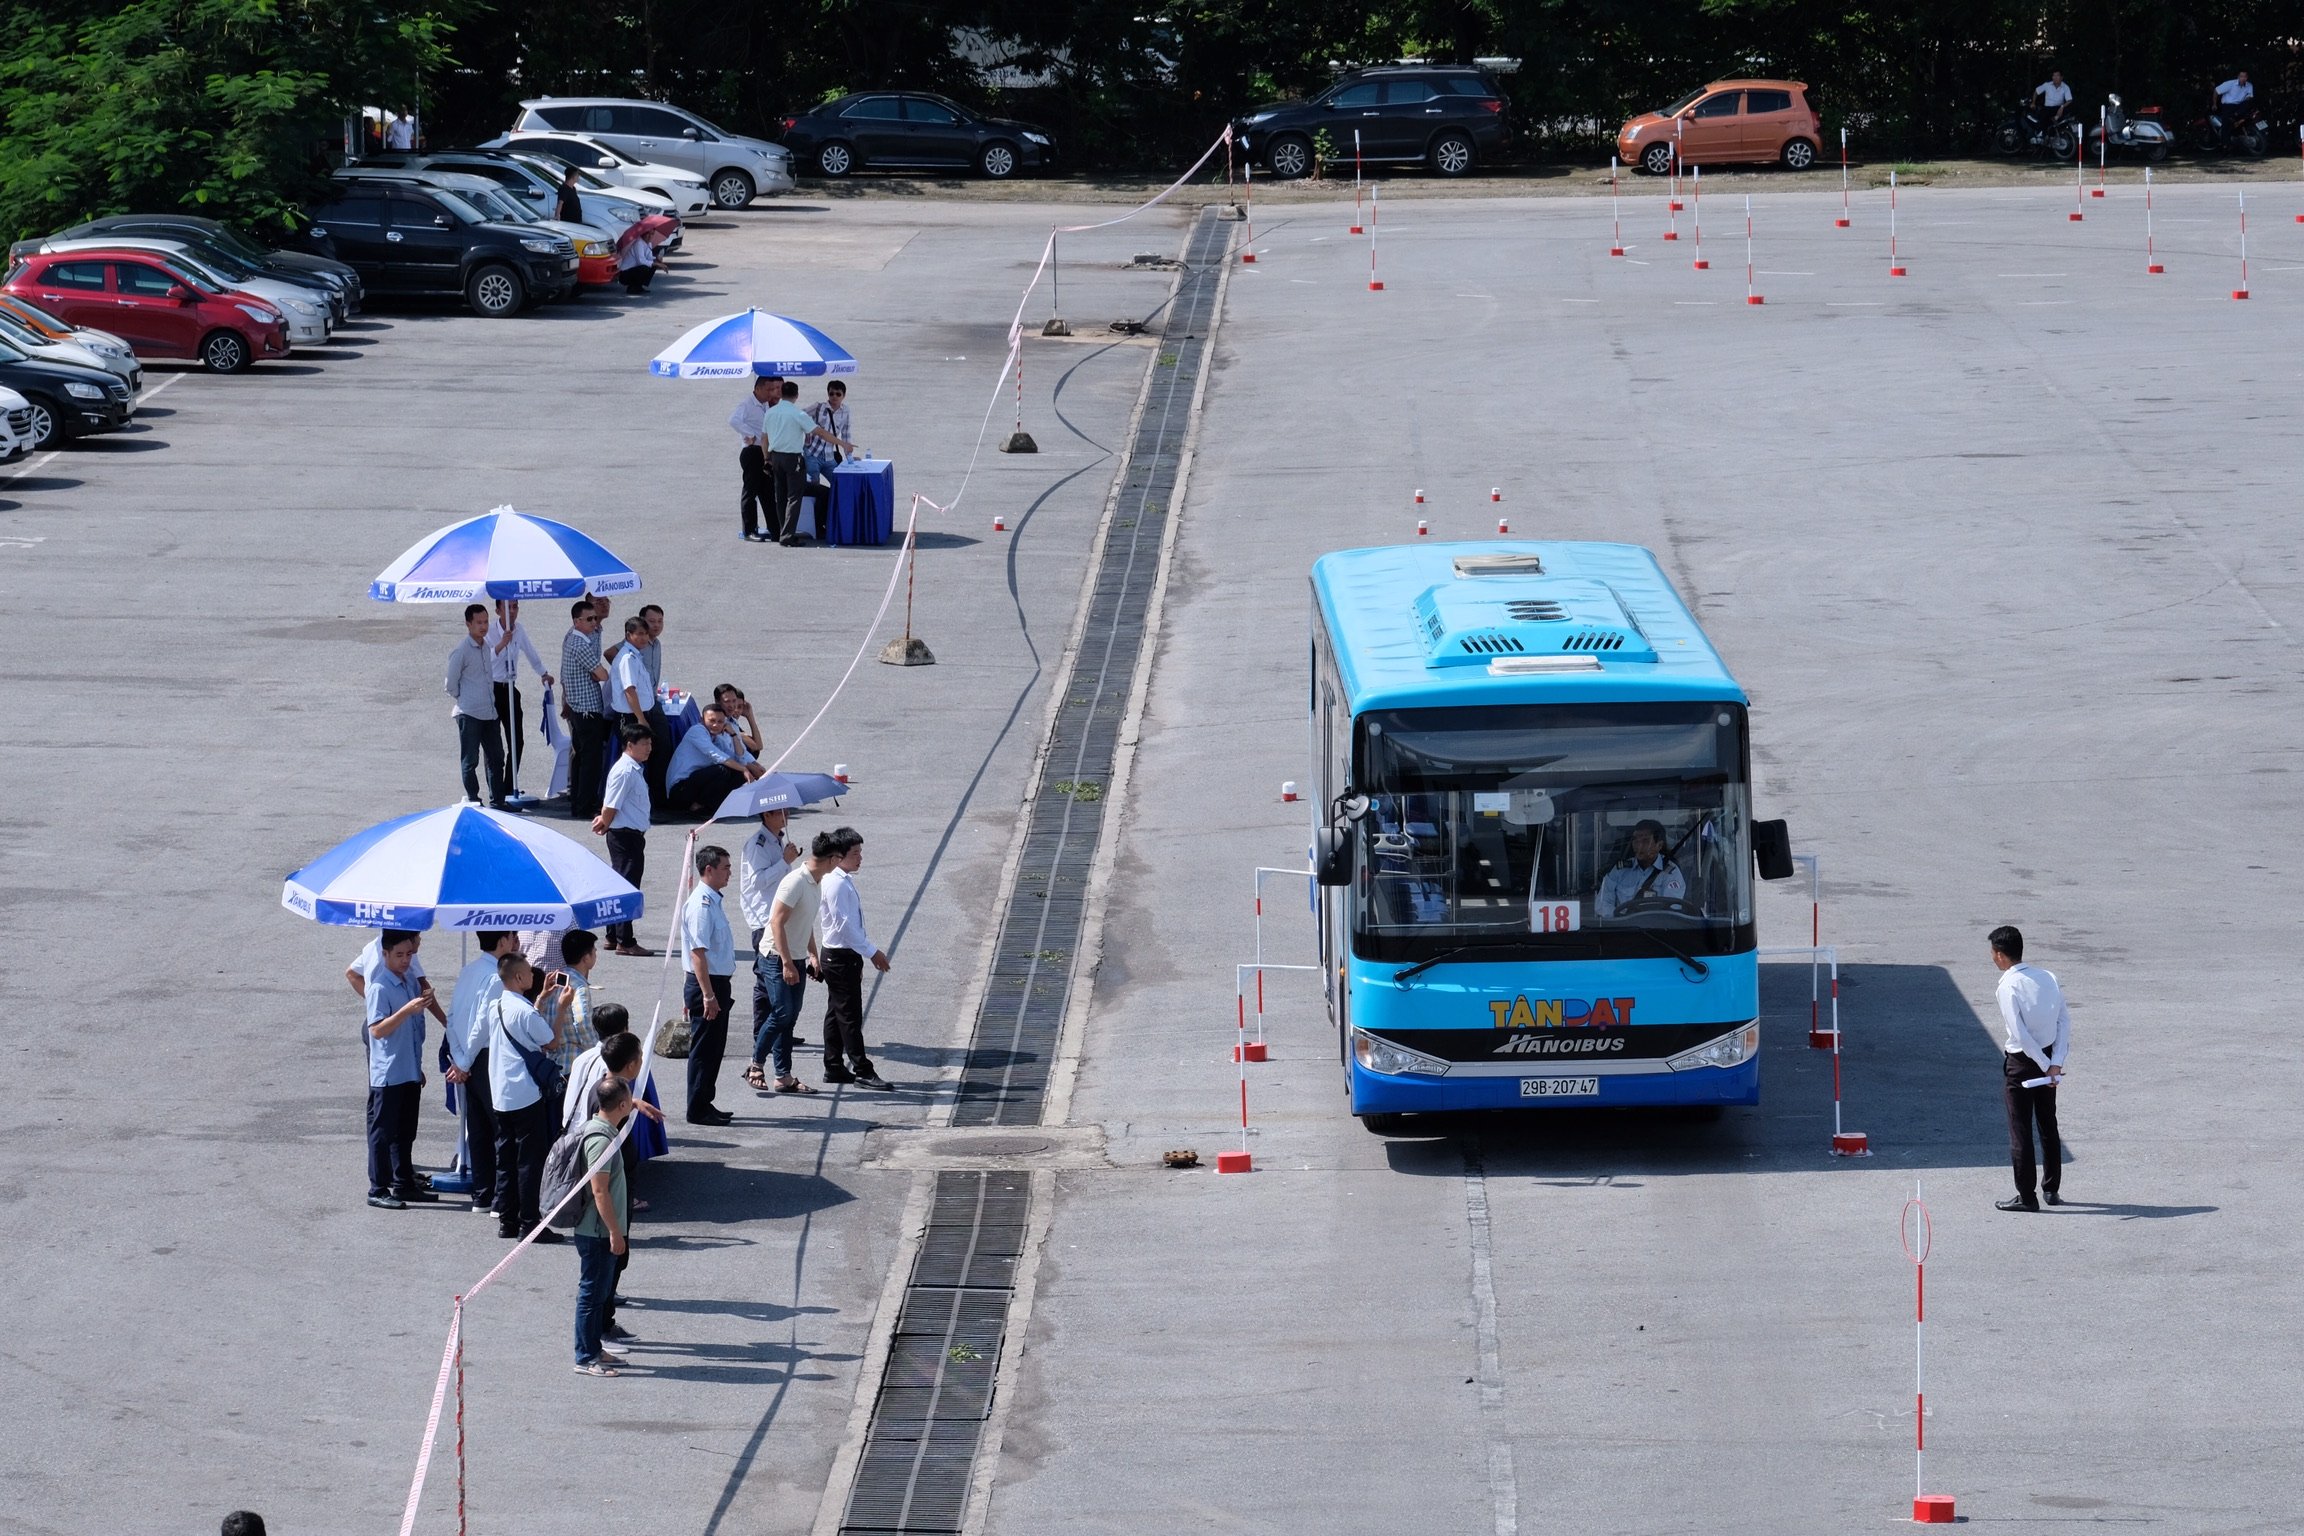 Tổng công ty vận tải Hà Nội (Transerco) tổ chức Hội thi lái xe giỏi, an toàn năm 2020.